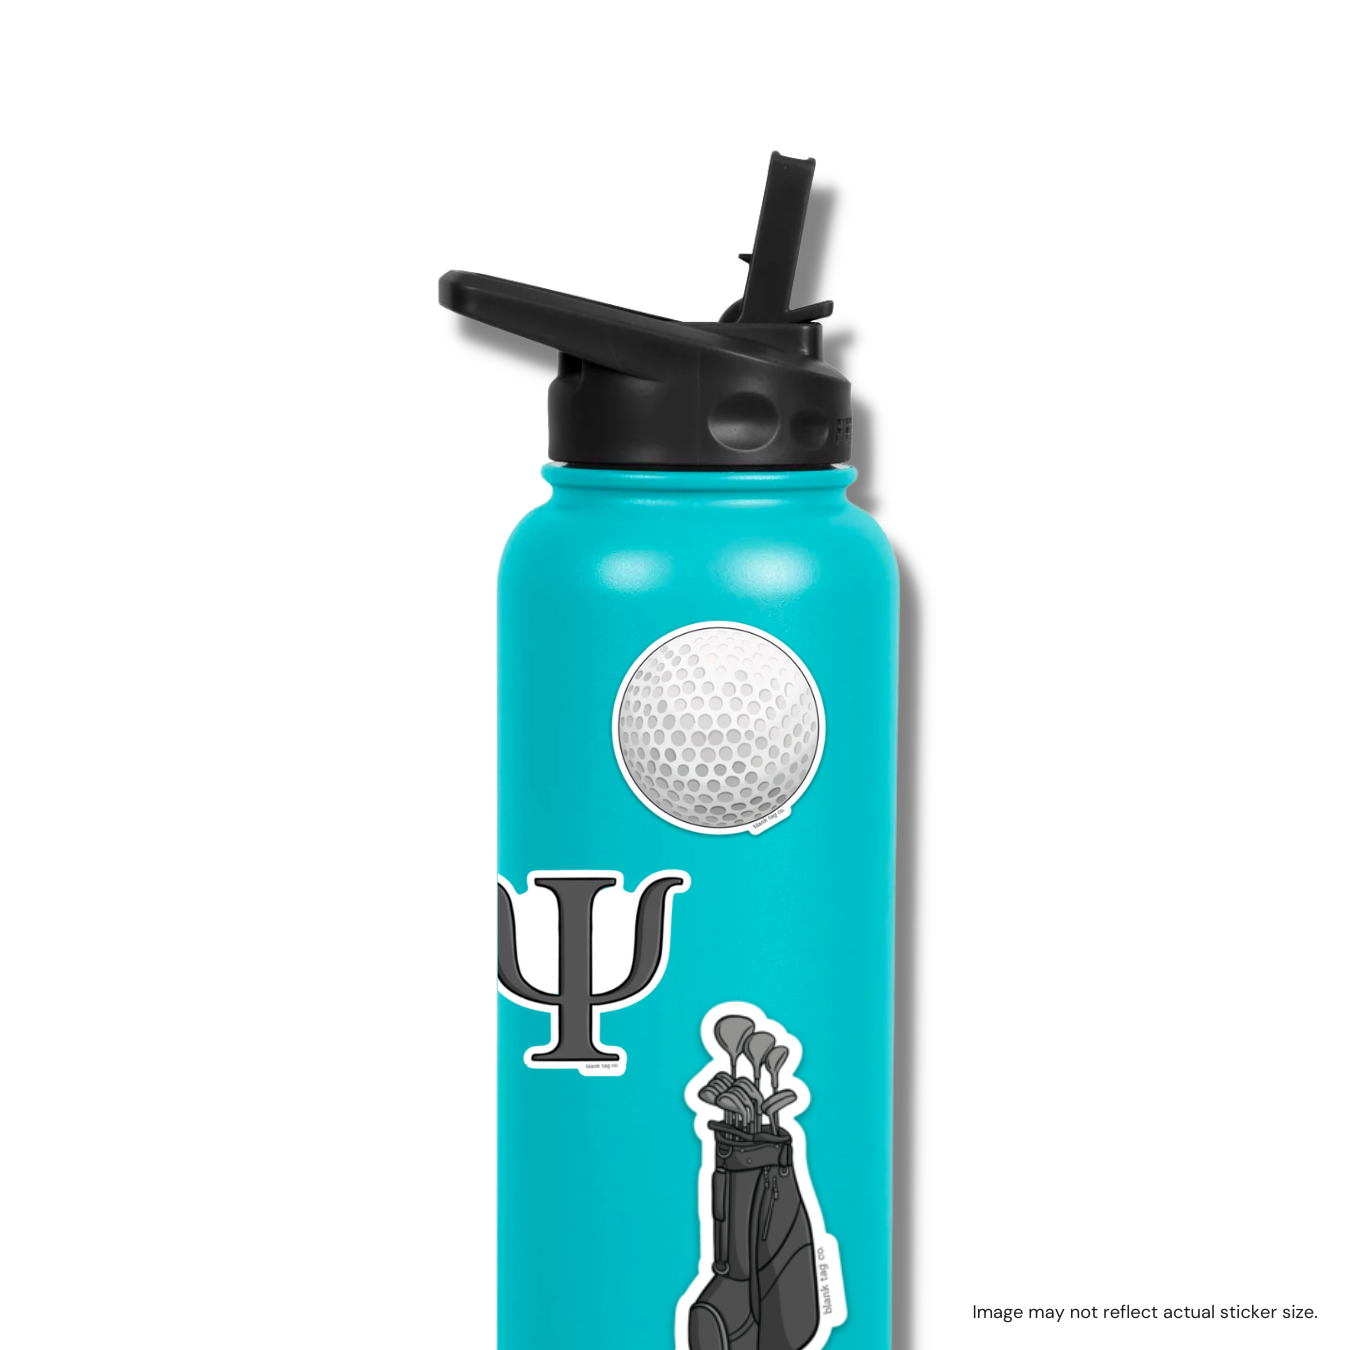 The Golf Clubs Sticker